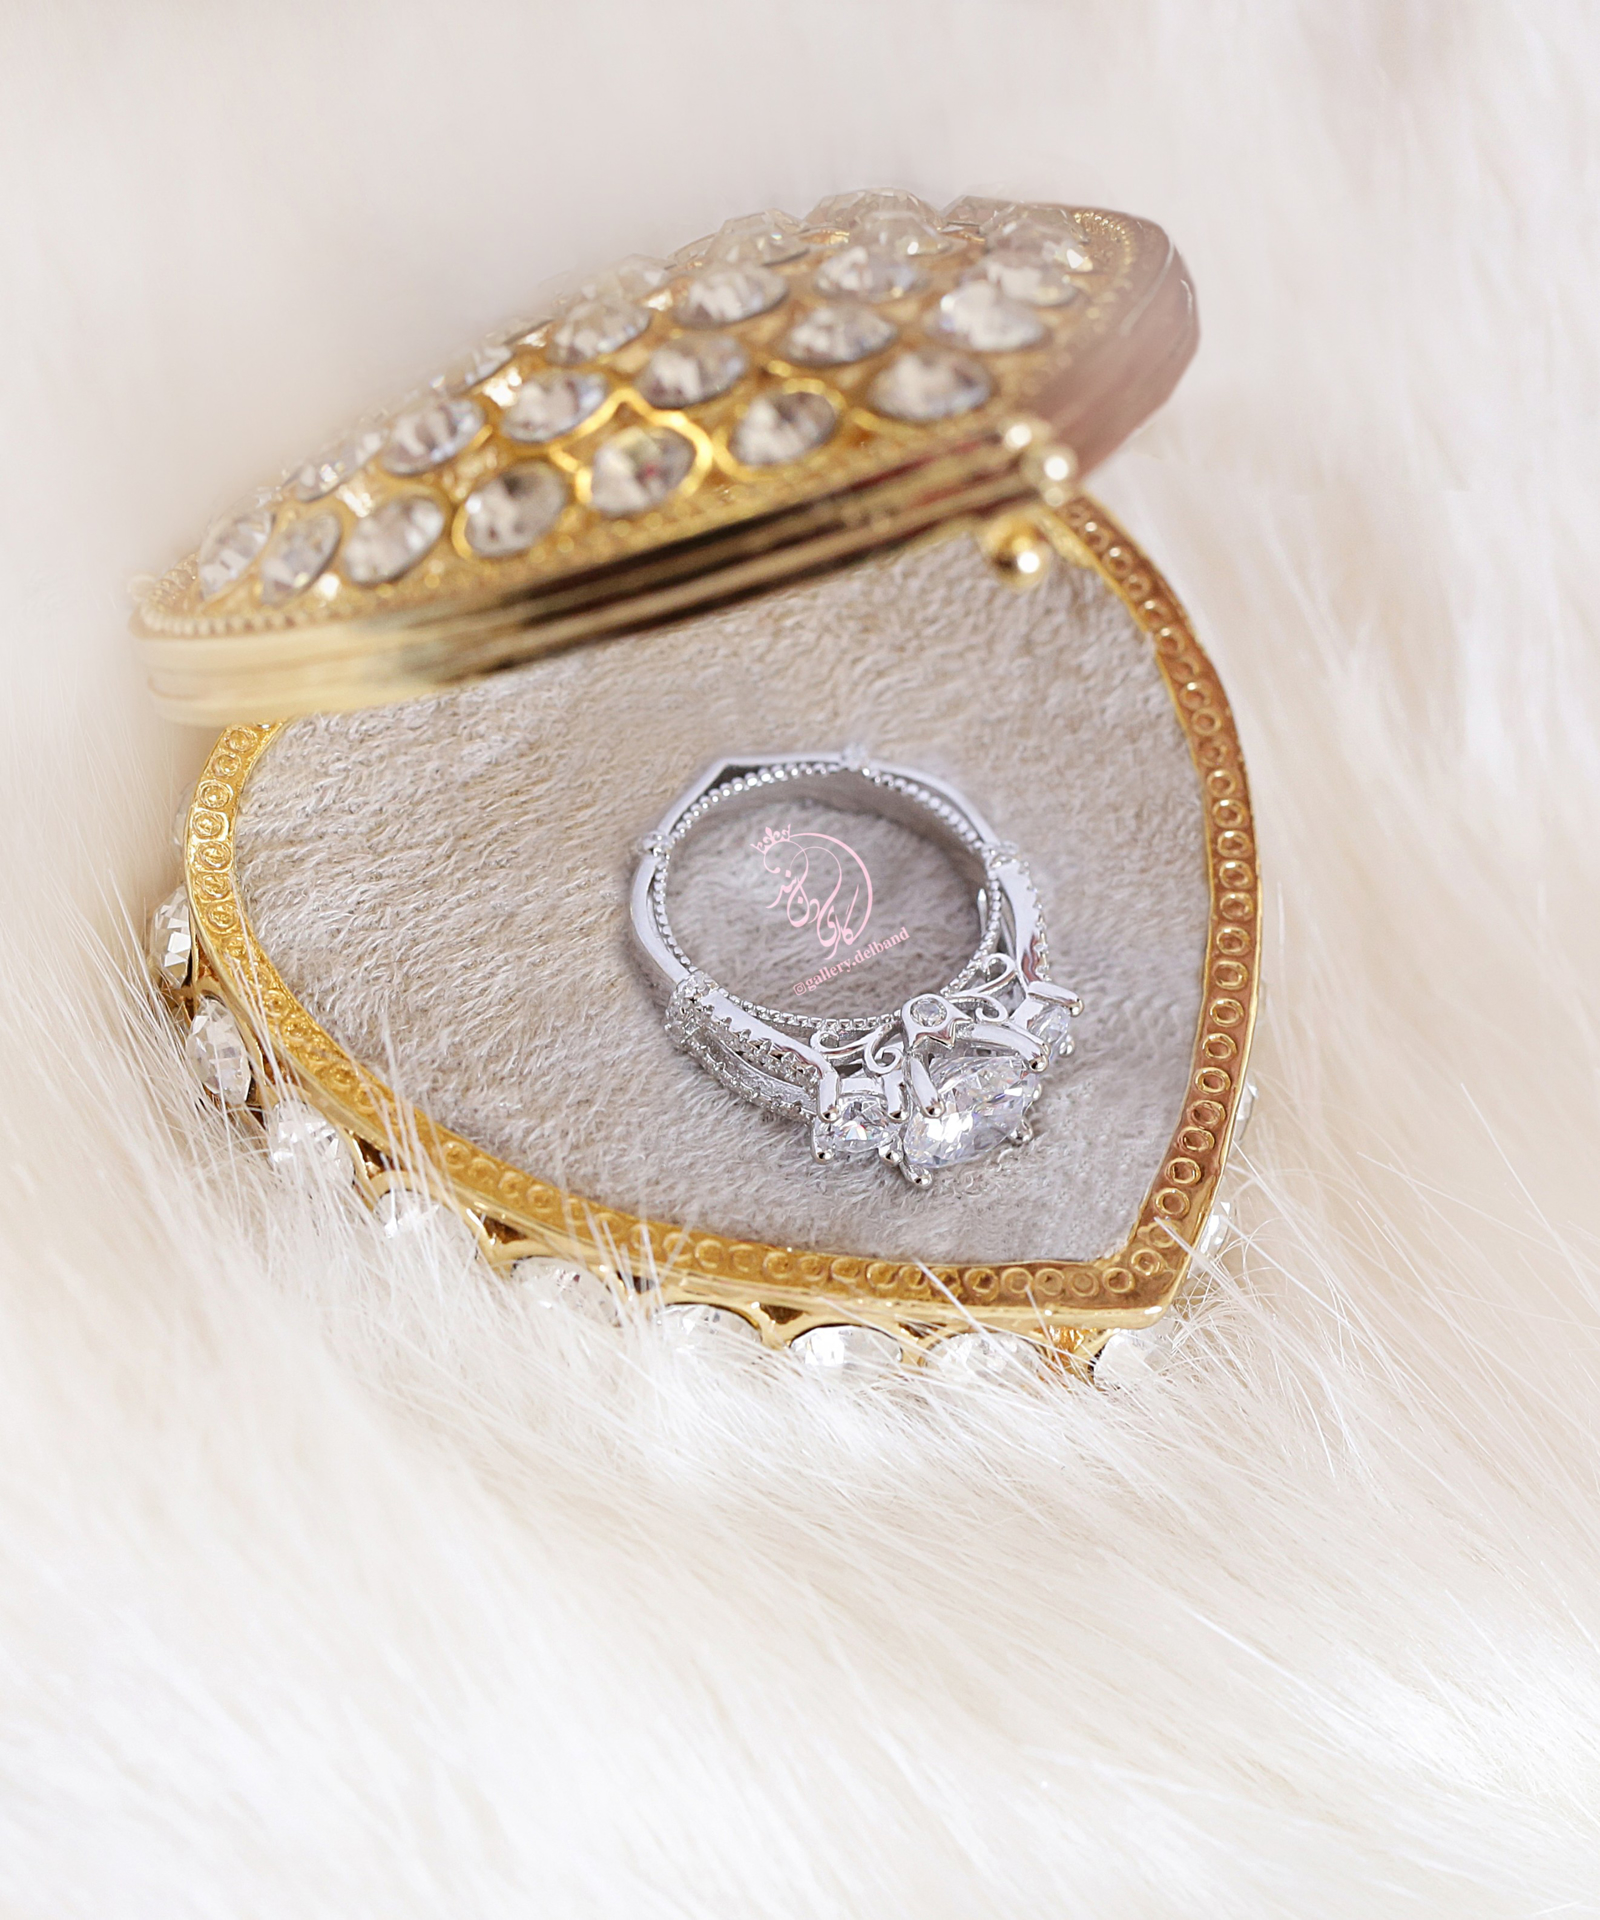 ‌‌ ‌💎انگشتر جواهری با نگینهای زیرکونیا اتریشی نقره عیار ۹۲۵ با روکش طلا سفید ‌‌‌‌‌‌‌‌‌‌و طراحی جواهر منحصر به فرد و سفارشی در نقره ‌‌‌‌‌‌